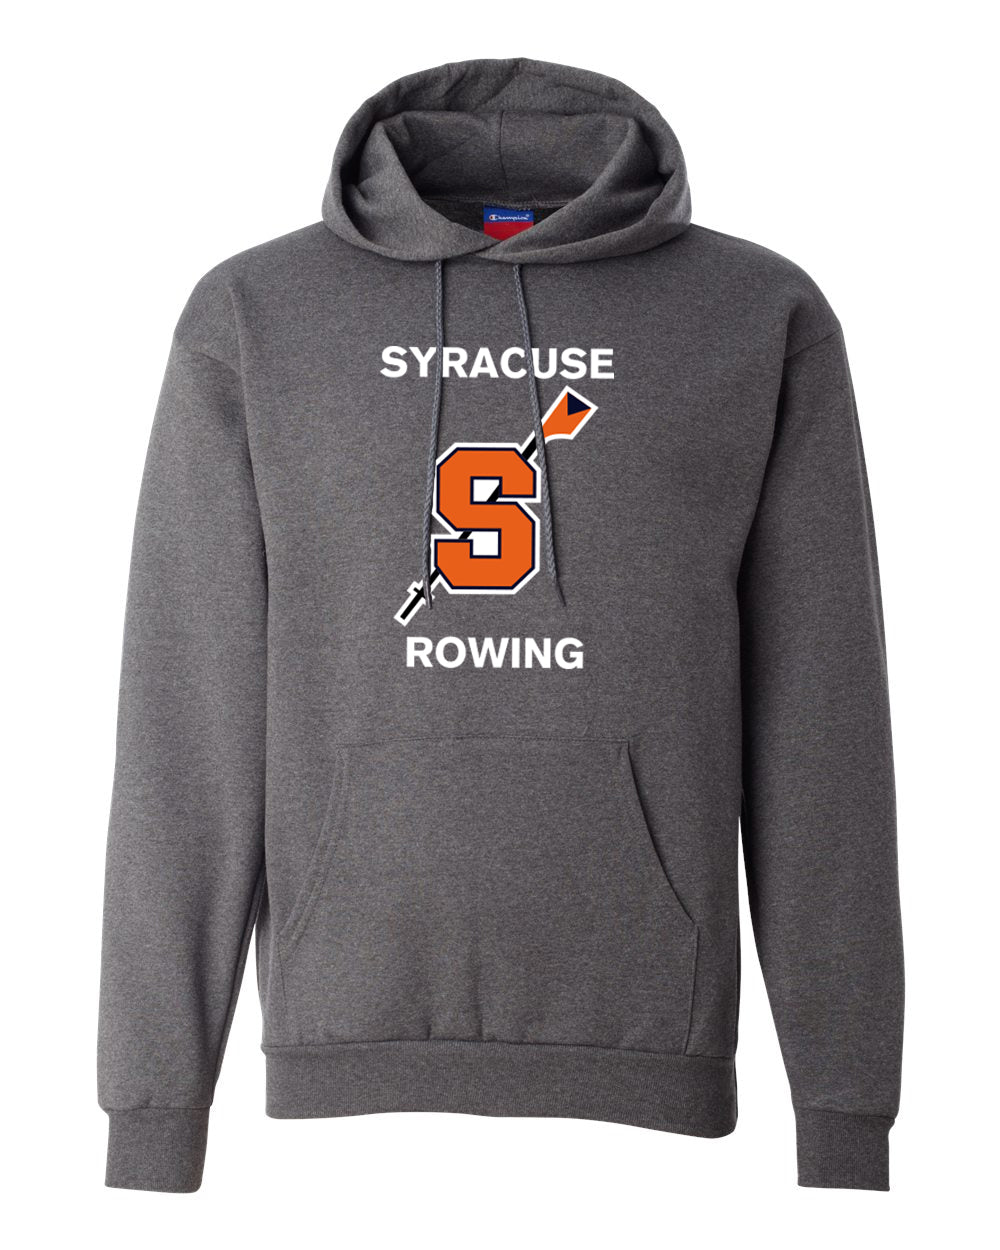 50/50 Hooded Syracuse Alumni Pullover Sweatshirt